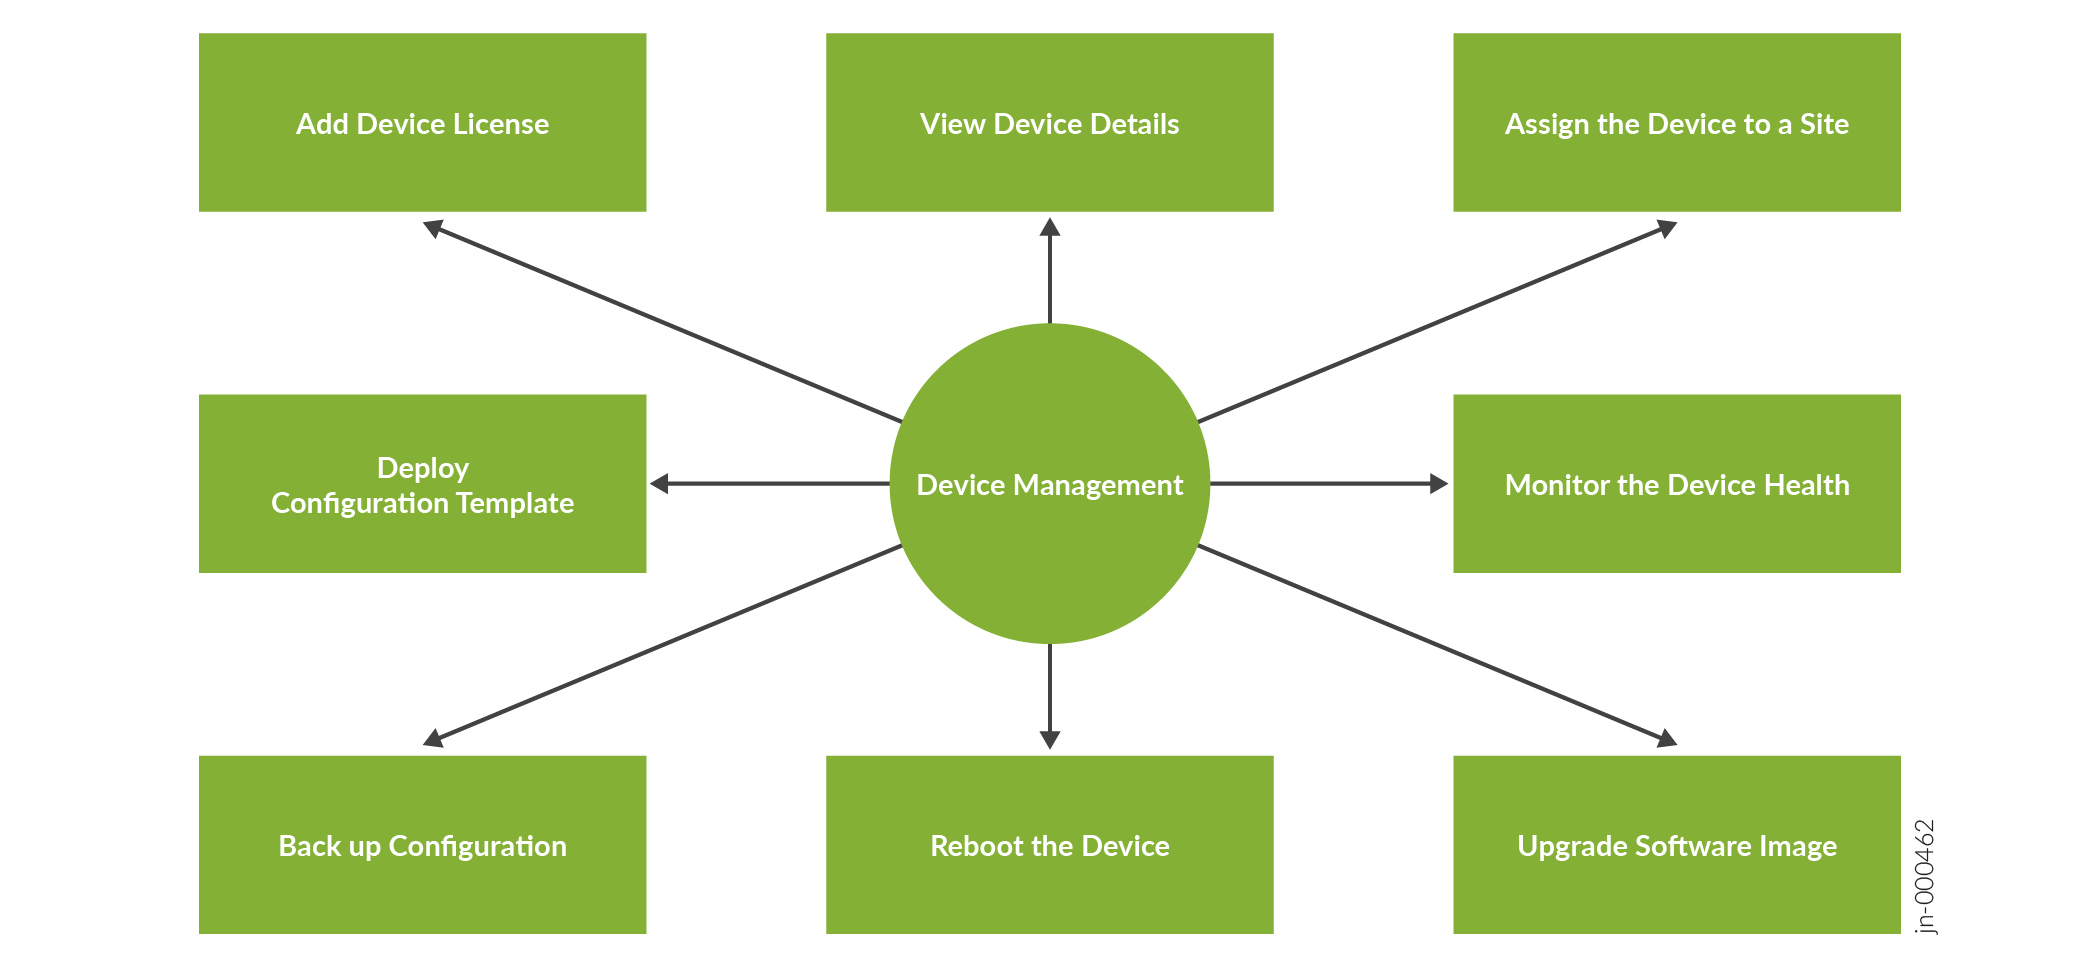 Device Management Tasks